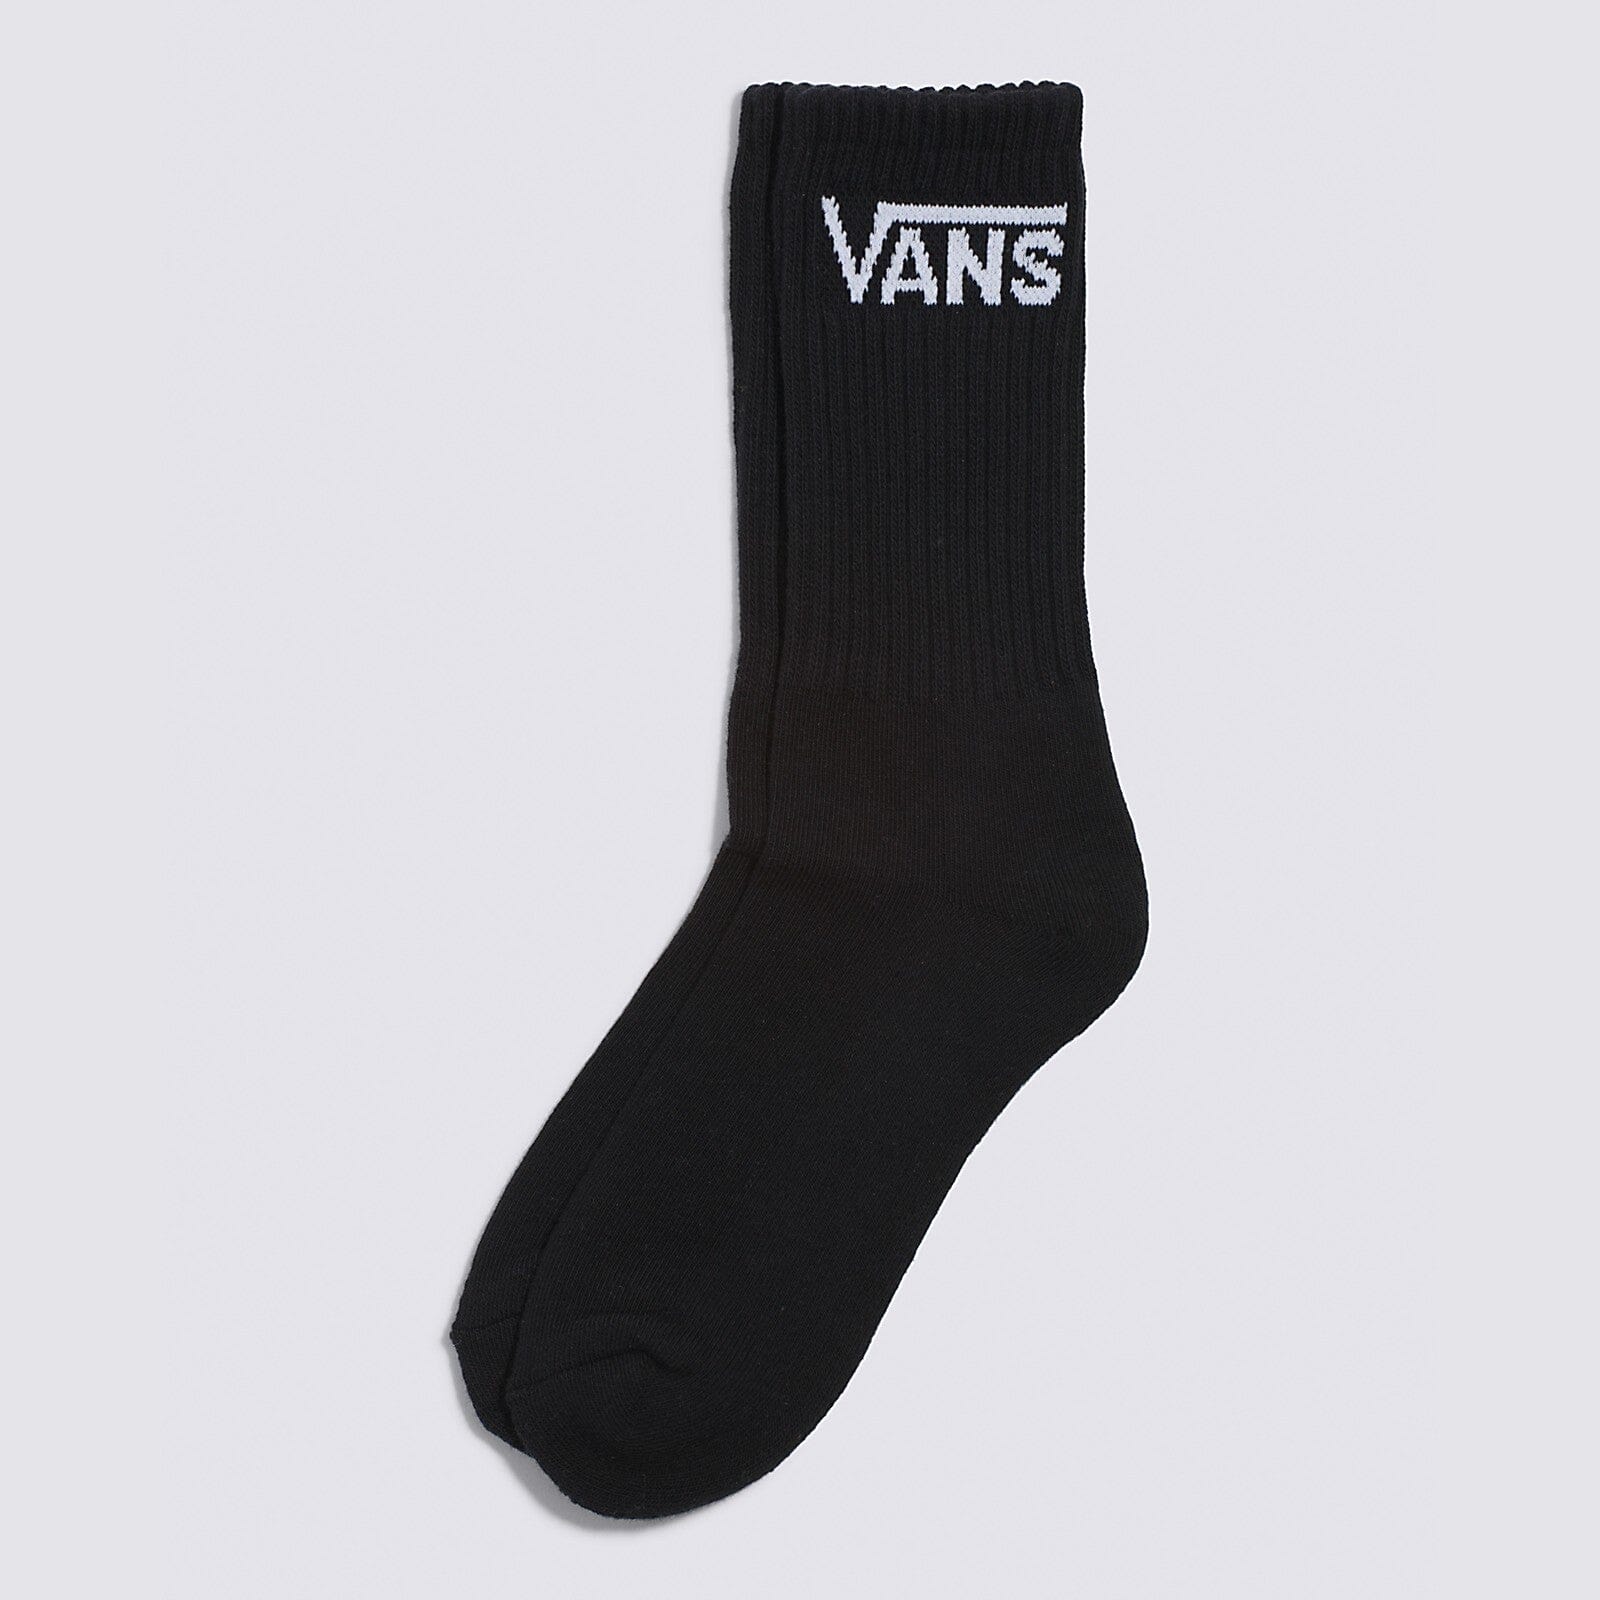 VANS Skate Crew Sock Black Men's Socks Vans 